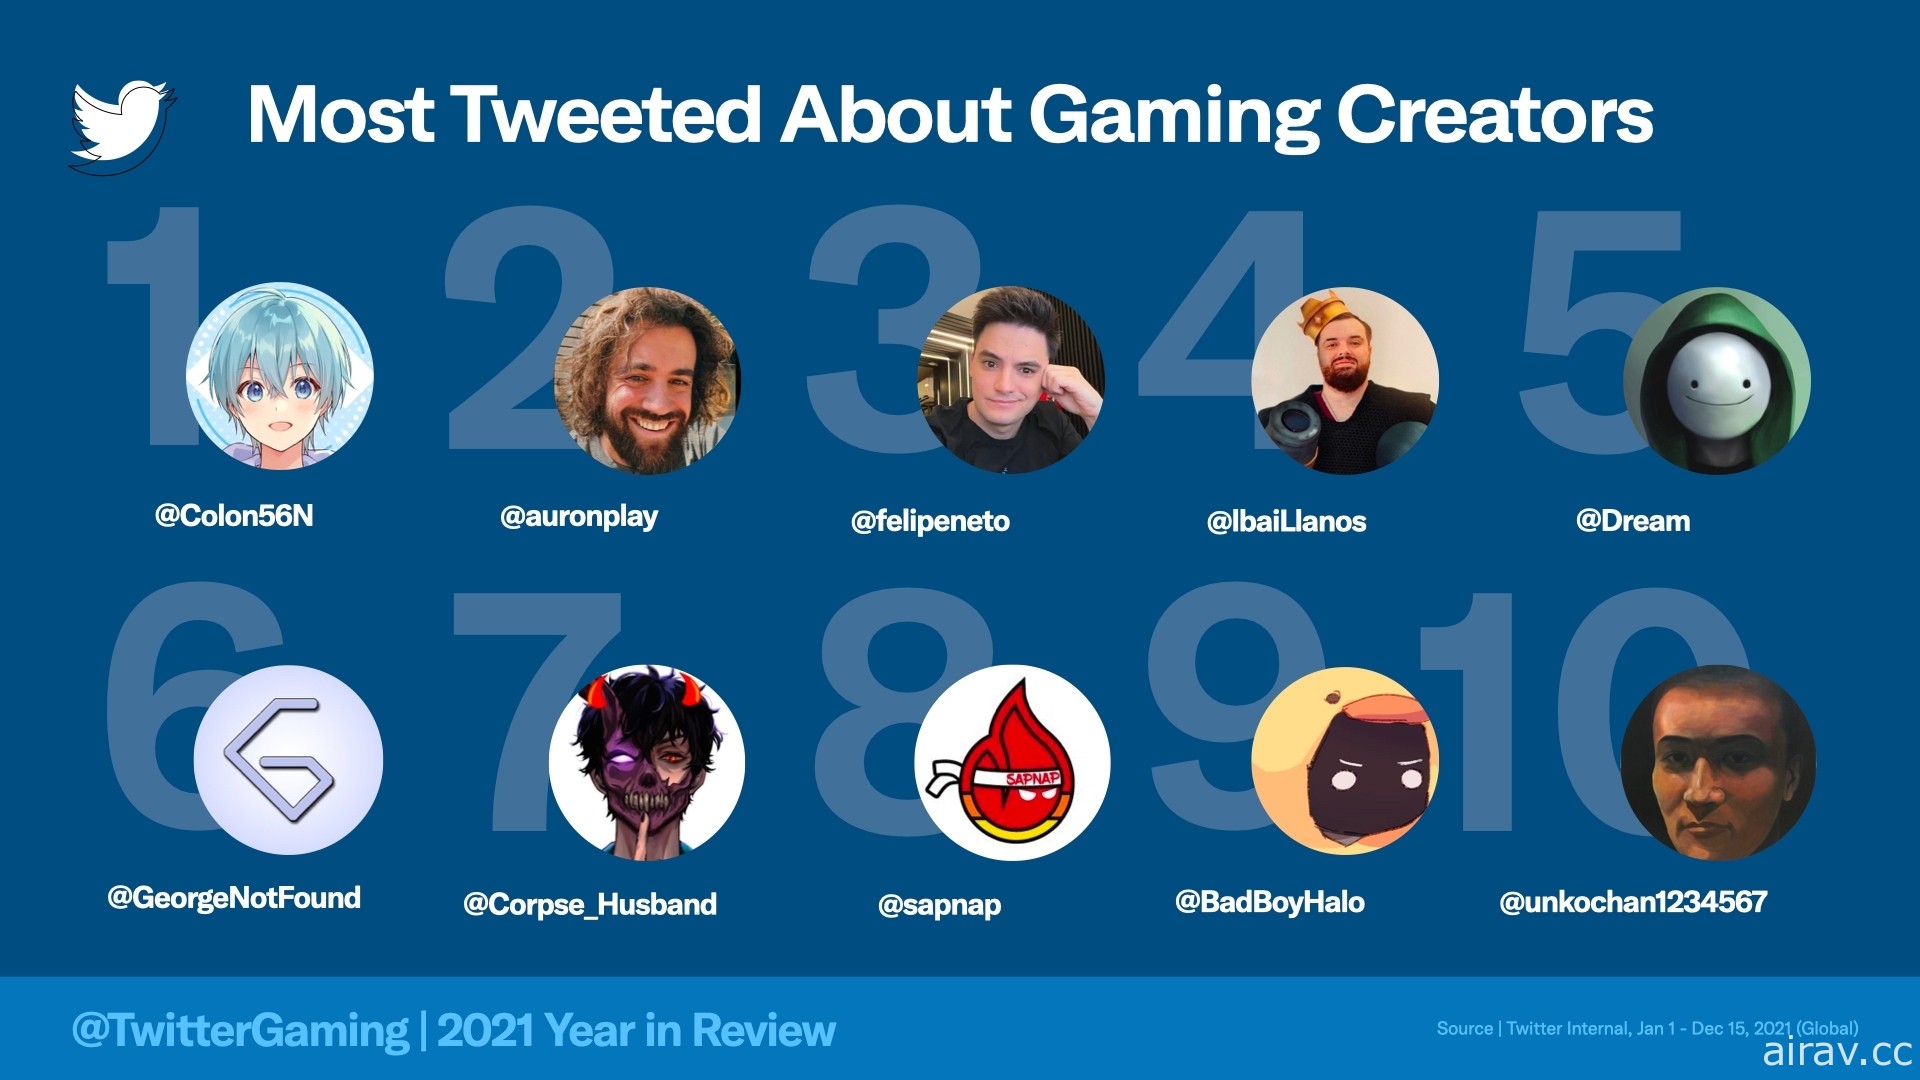 Twitter 公开 2021 年全球游戏趋势话题 《原神》为最多推文之游戏